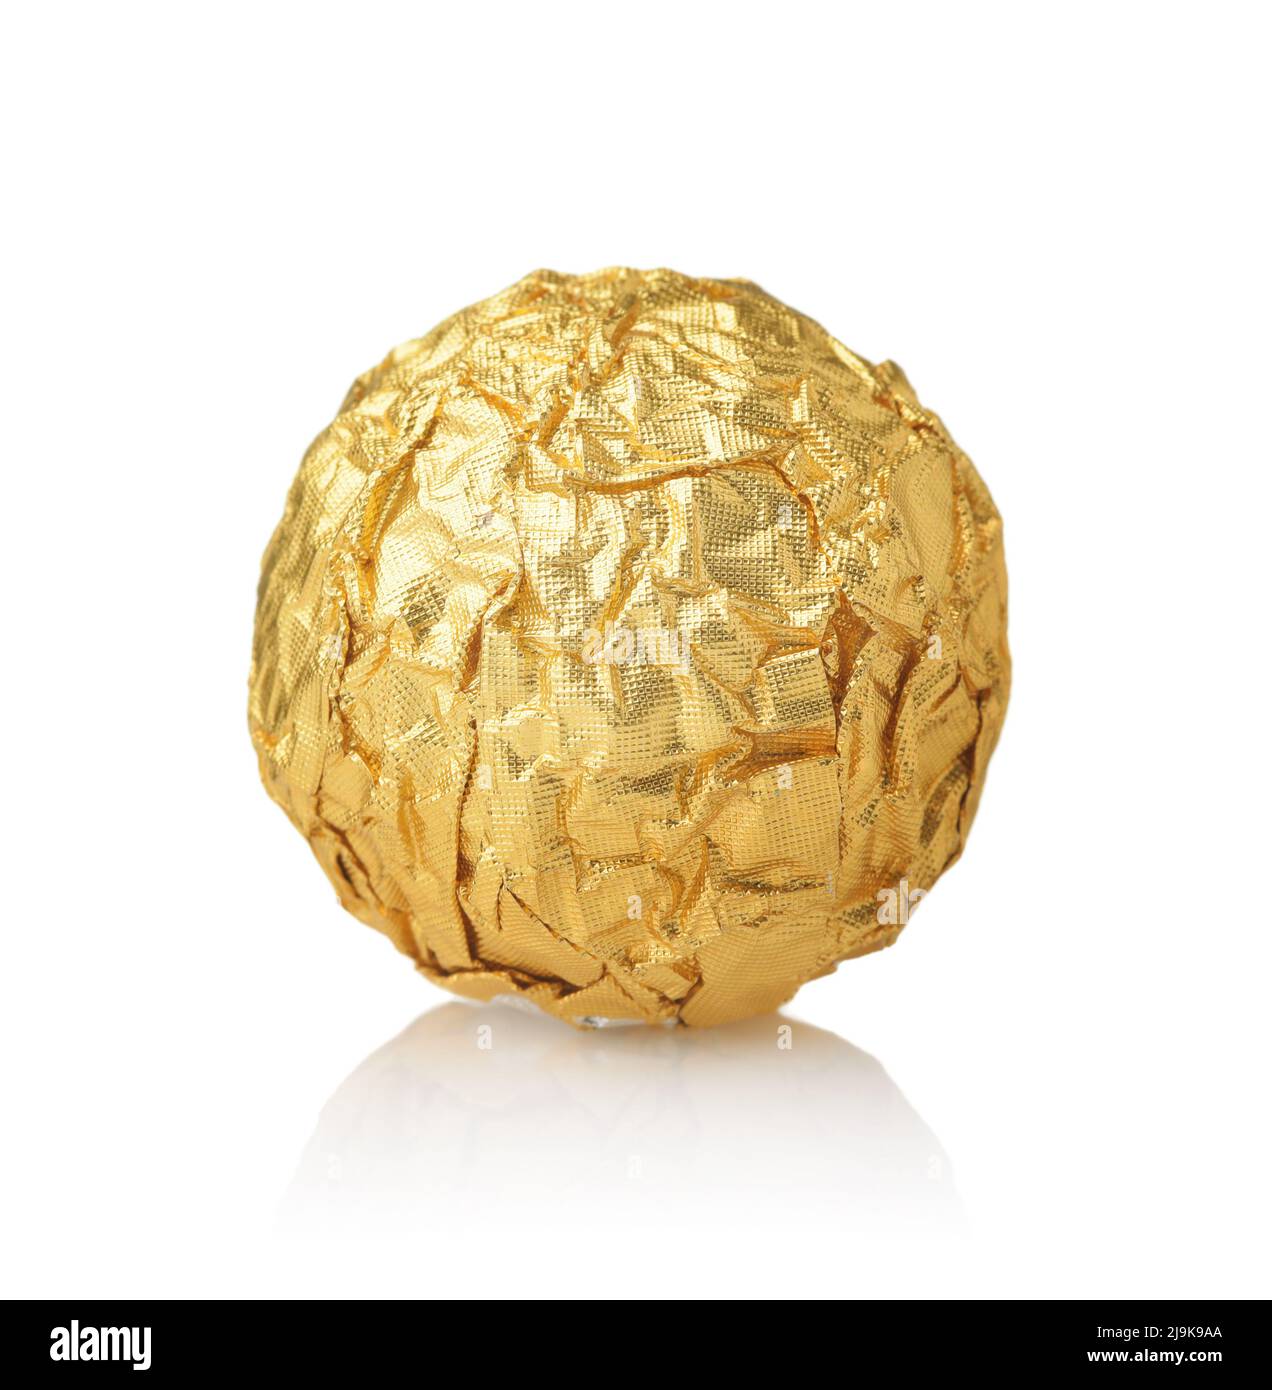 Vista frontal de una bola de chocolate dulce en envoltura de papel de aluminio de oro aislado en blanco Foto de stock